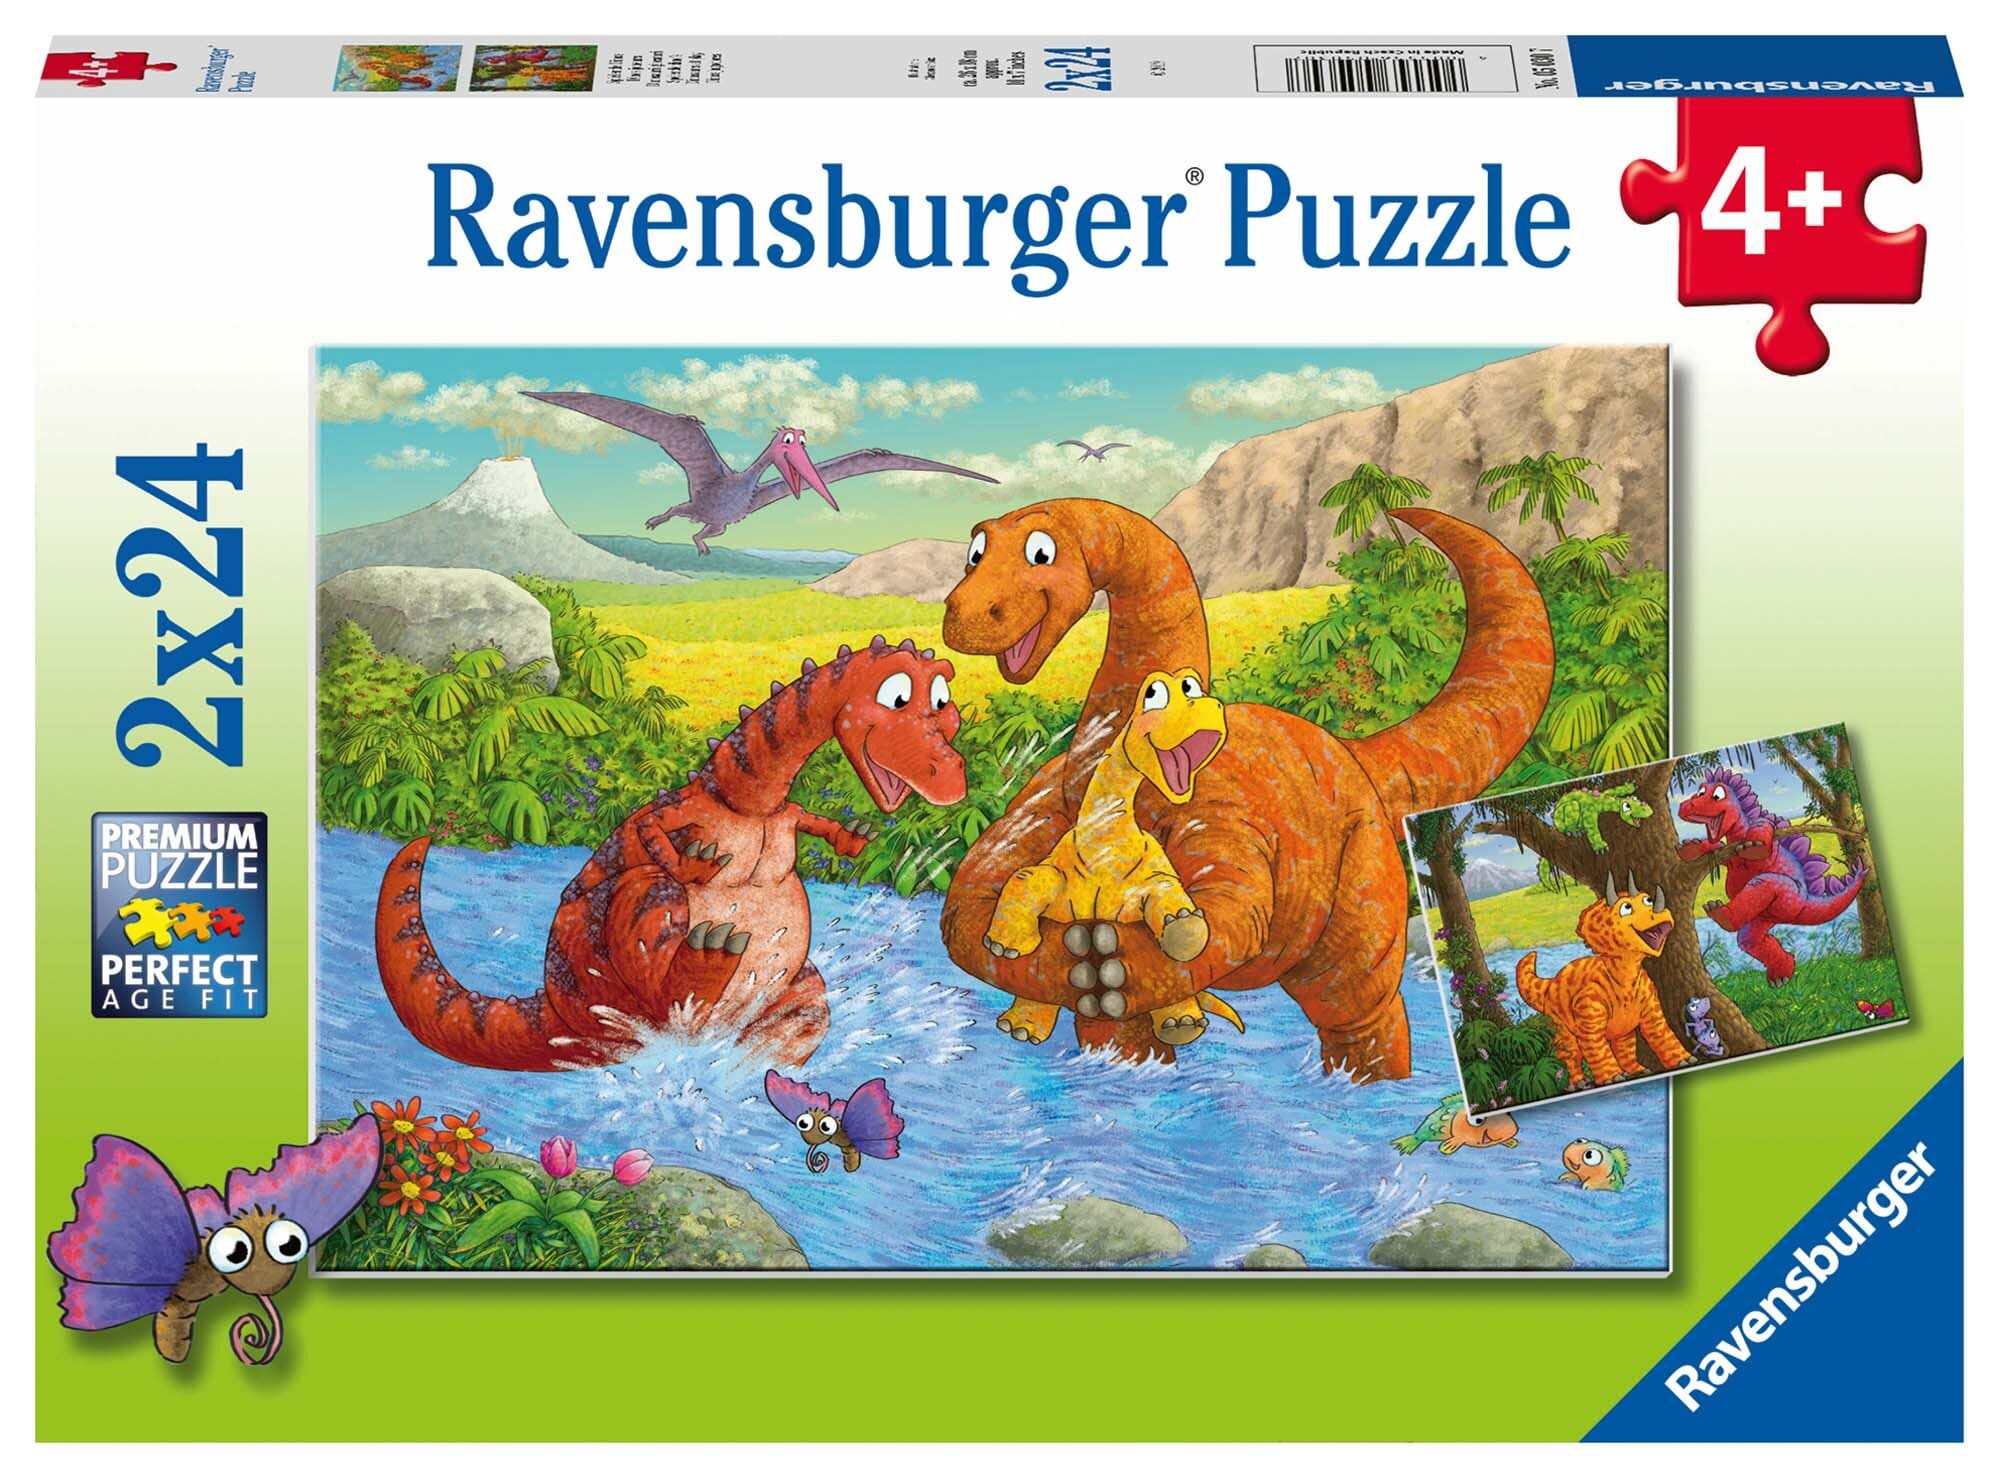 Ravensburger Puslespill, Dinosaurs at Play 2x24 brikker